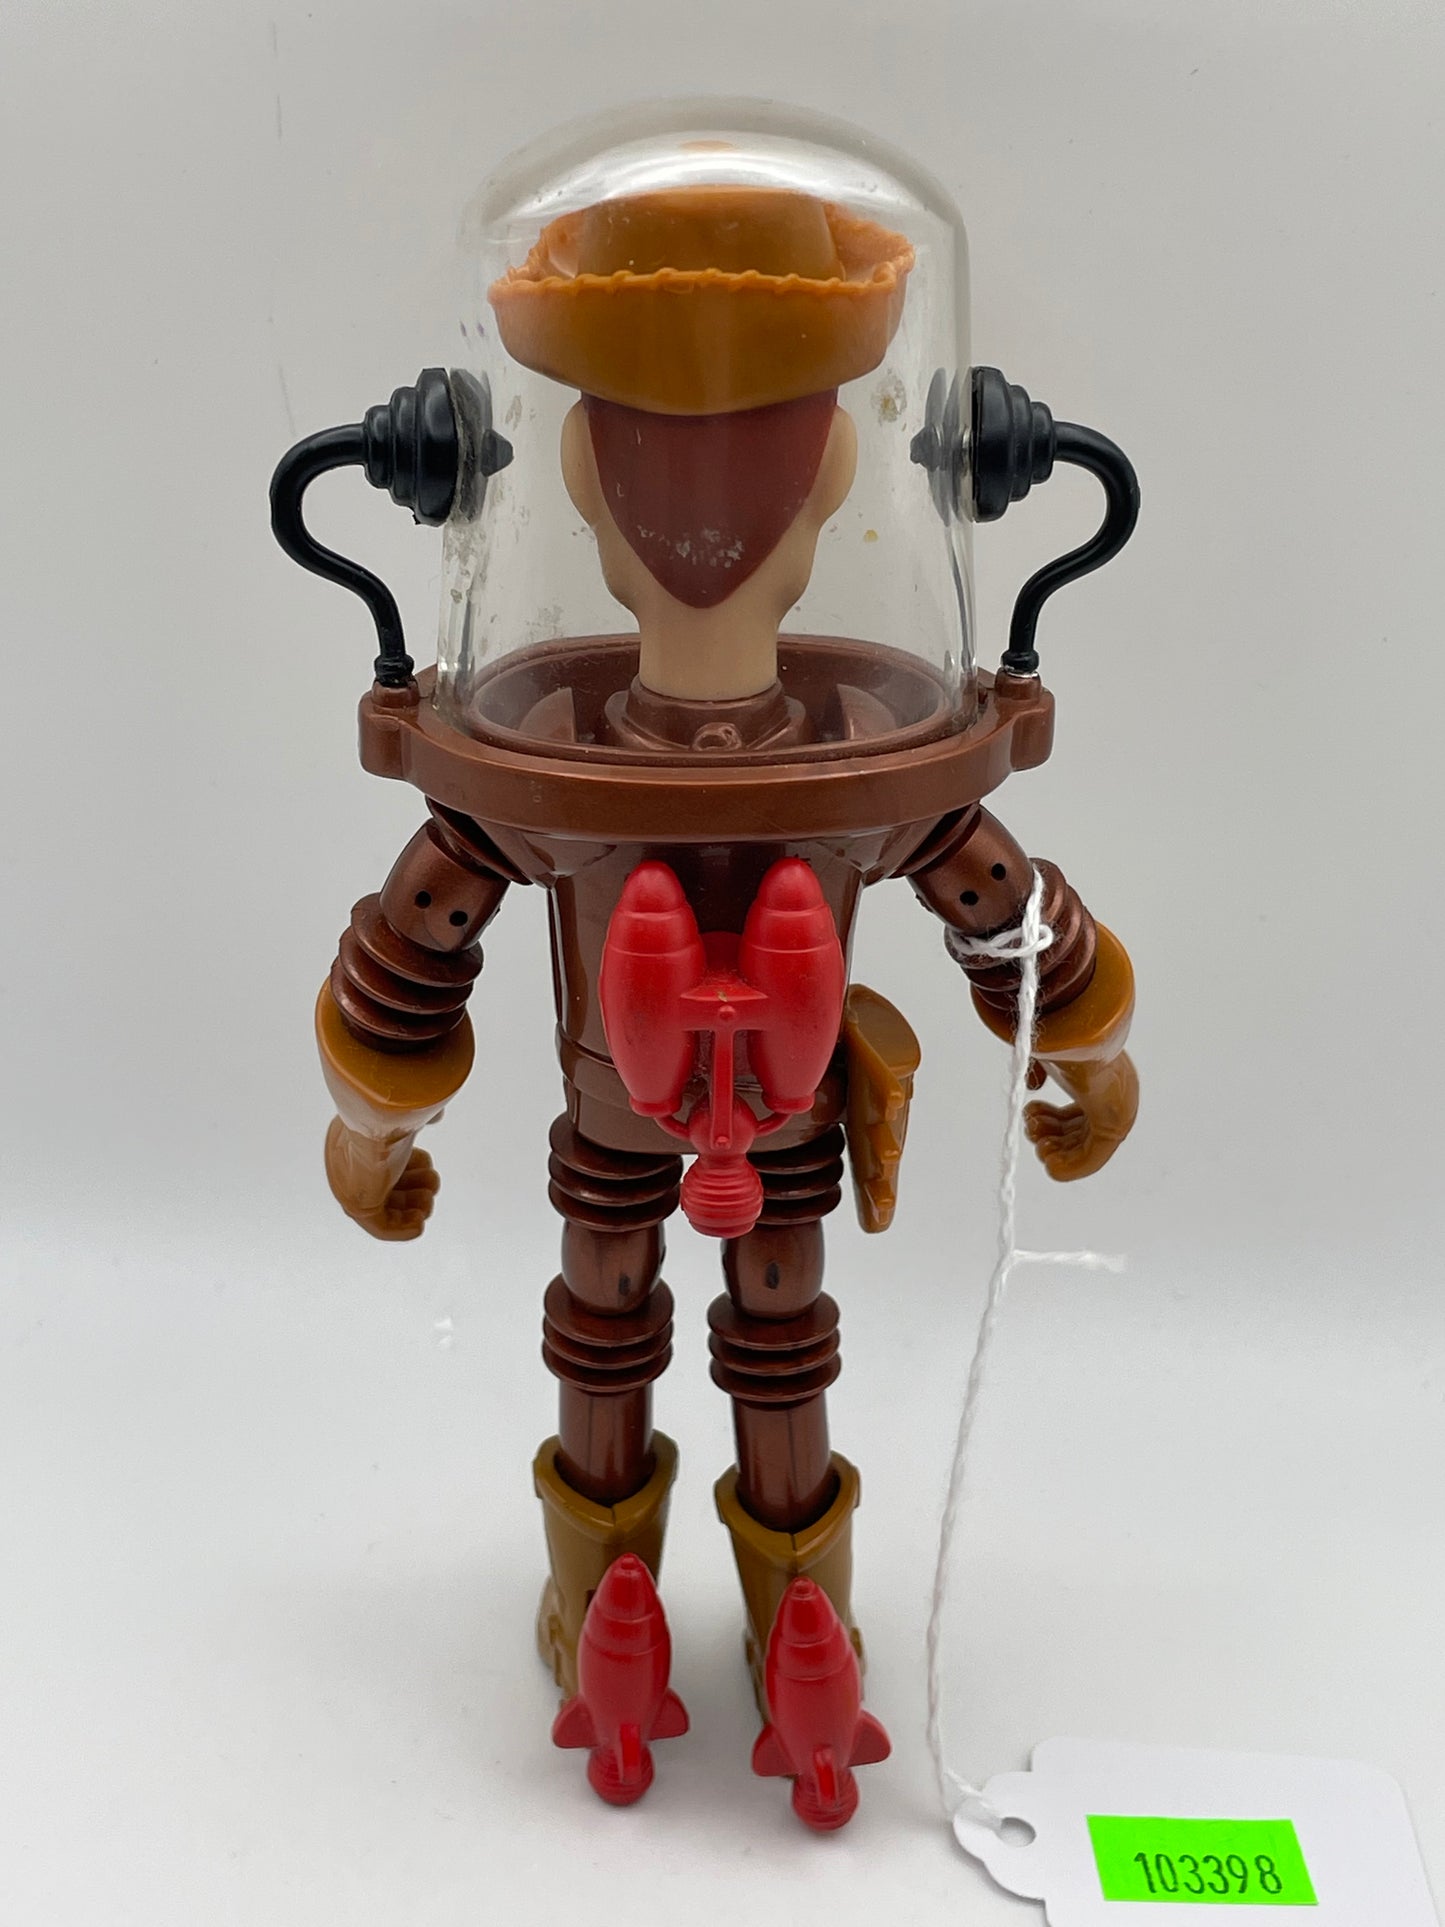 Toy Story - Water Patrol Woody 2000 #103398